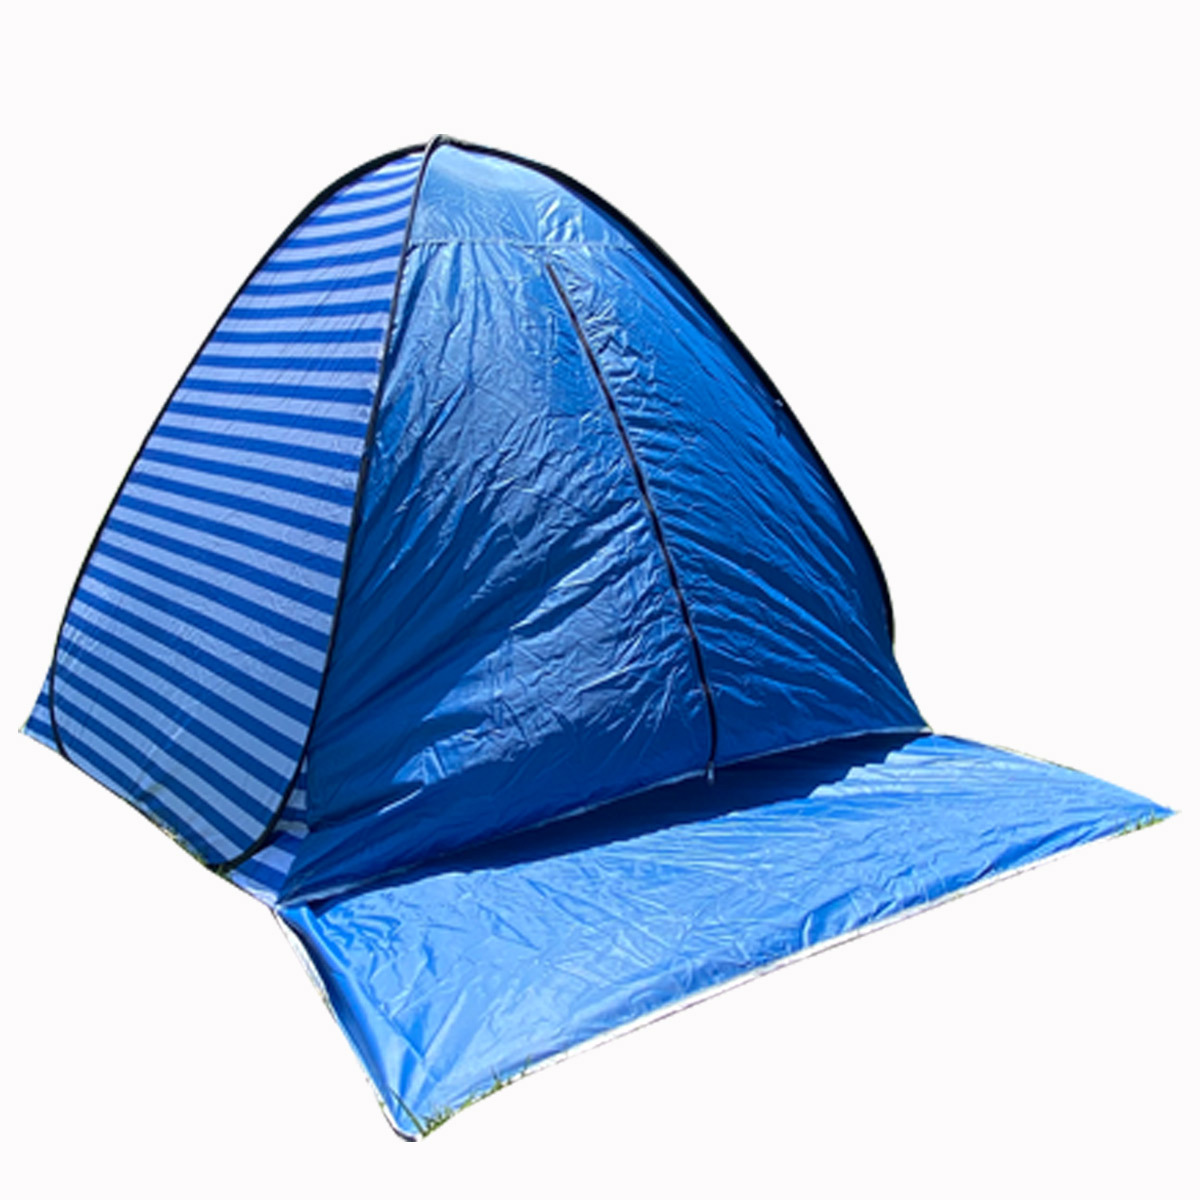 ポップアップテント ビーチテント ワンタッチ テント 2人用 3人用 サンシェード 5秒設置 かわいい おしゃれ 超軽量 防水 通気性抜群 アウトドア  キャンプ用品